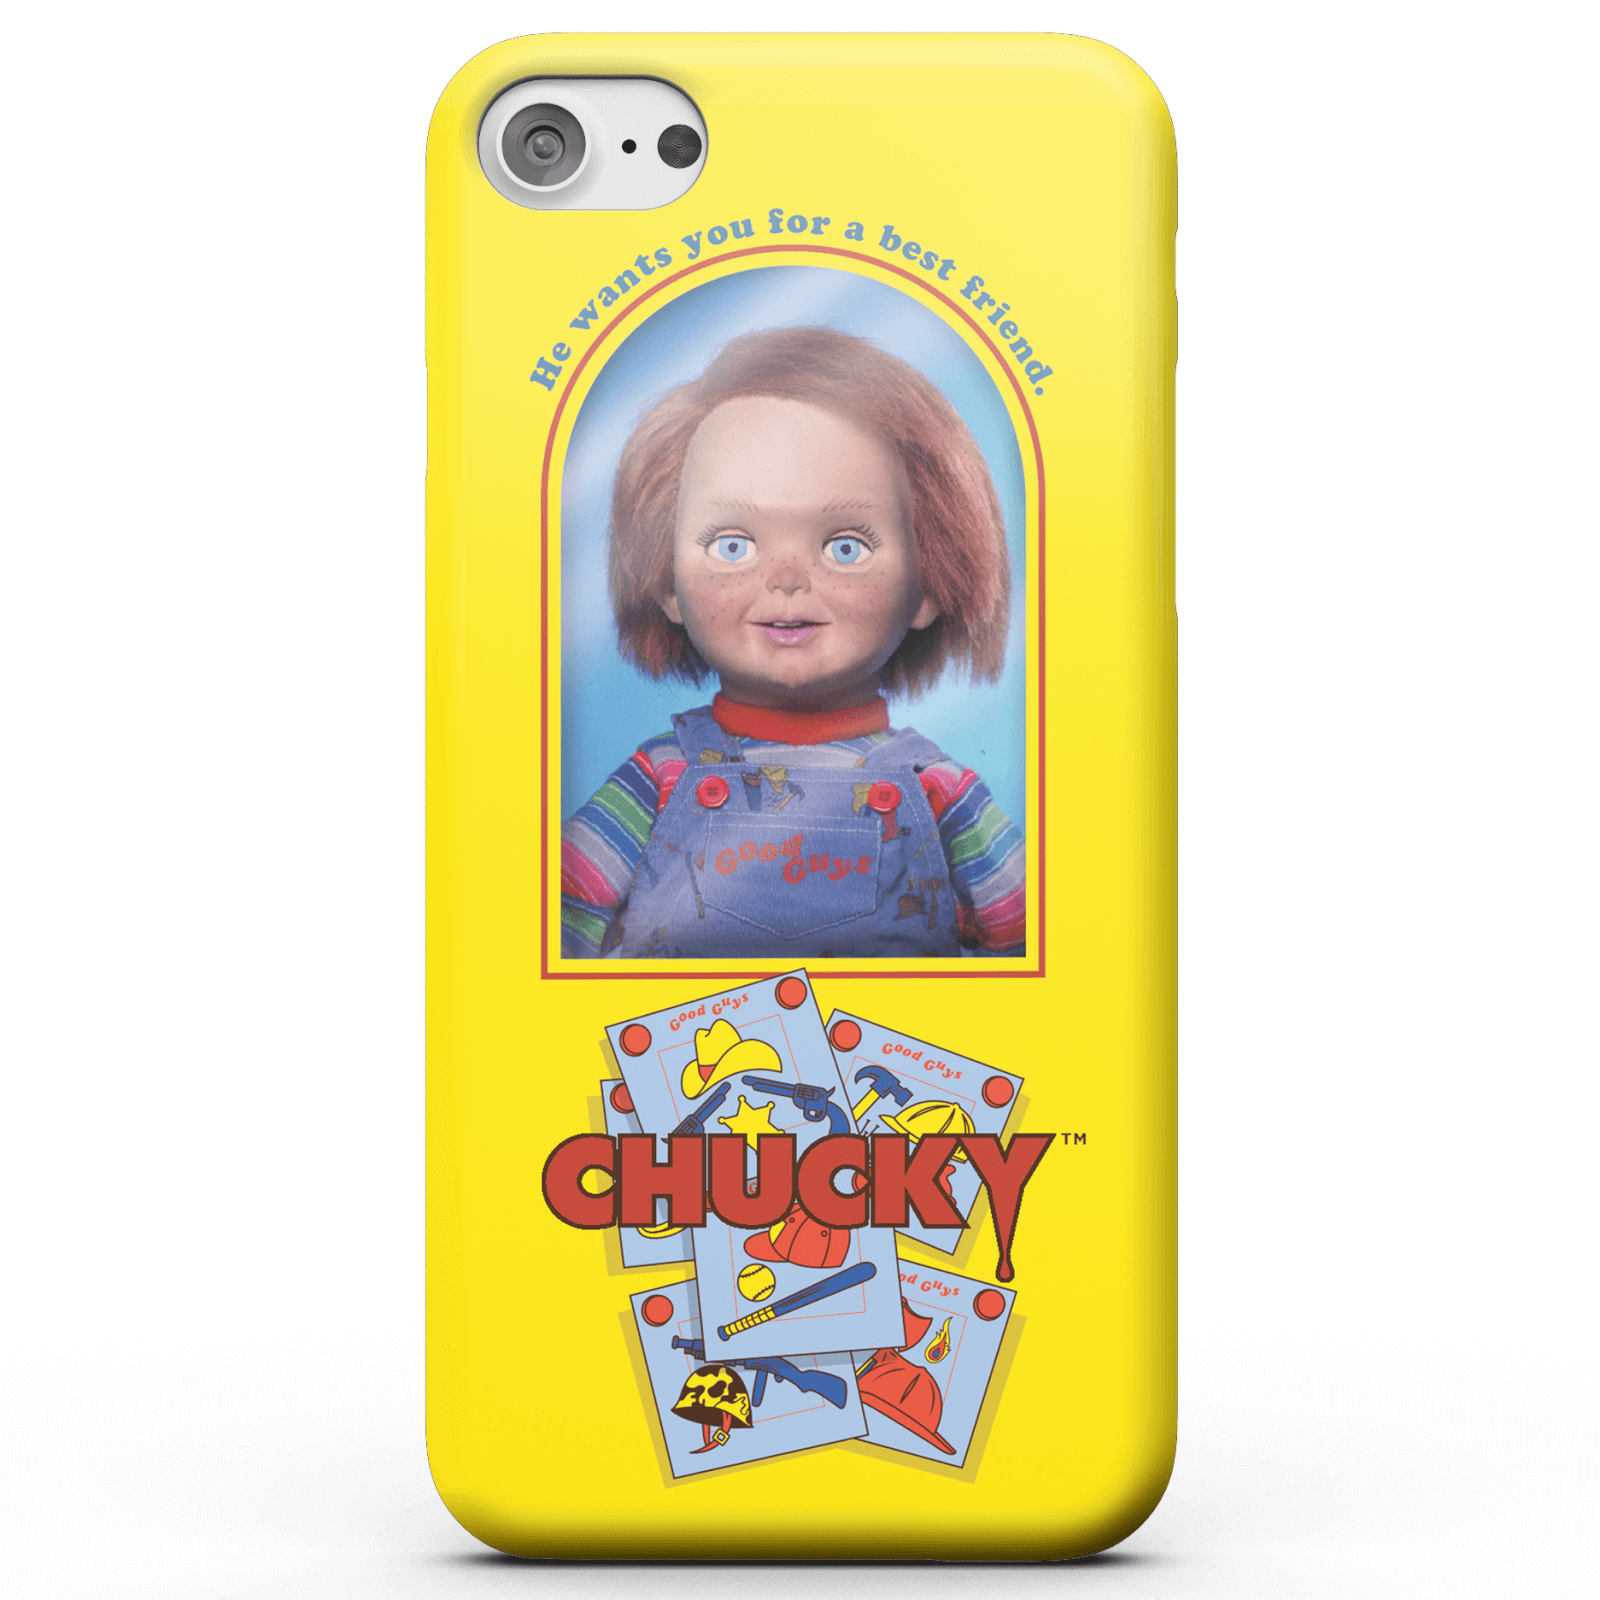 Chucky Good Guys Doll Smartphone Hülle für iPhone und Android - iPhone 6 Plus - Tough Hülle Glänzend von Chucky